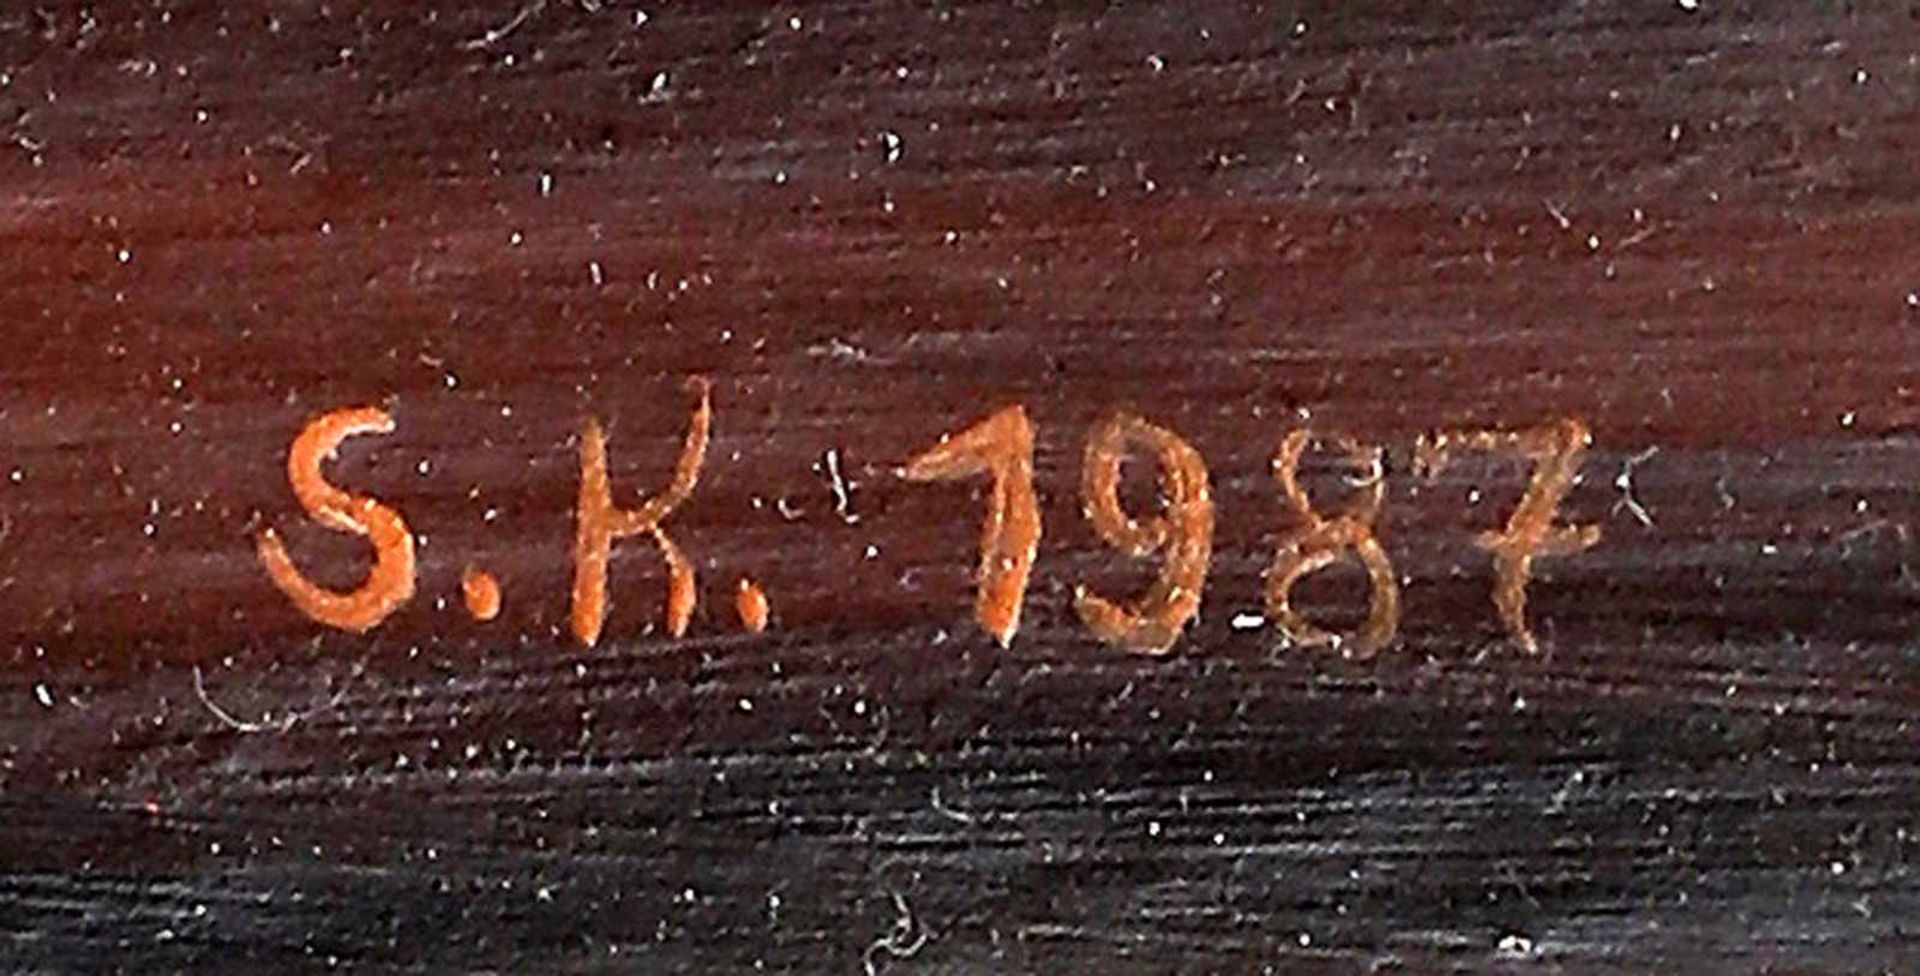 Monogrammist, Blumenstillleben Barockstil re. u. monogramm. "S.K." und dat. 1987, Öl/Maltafel, - Bild 2 aus 2